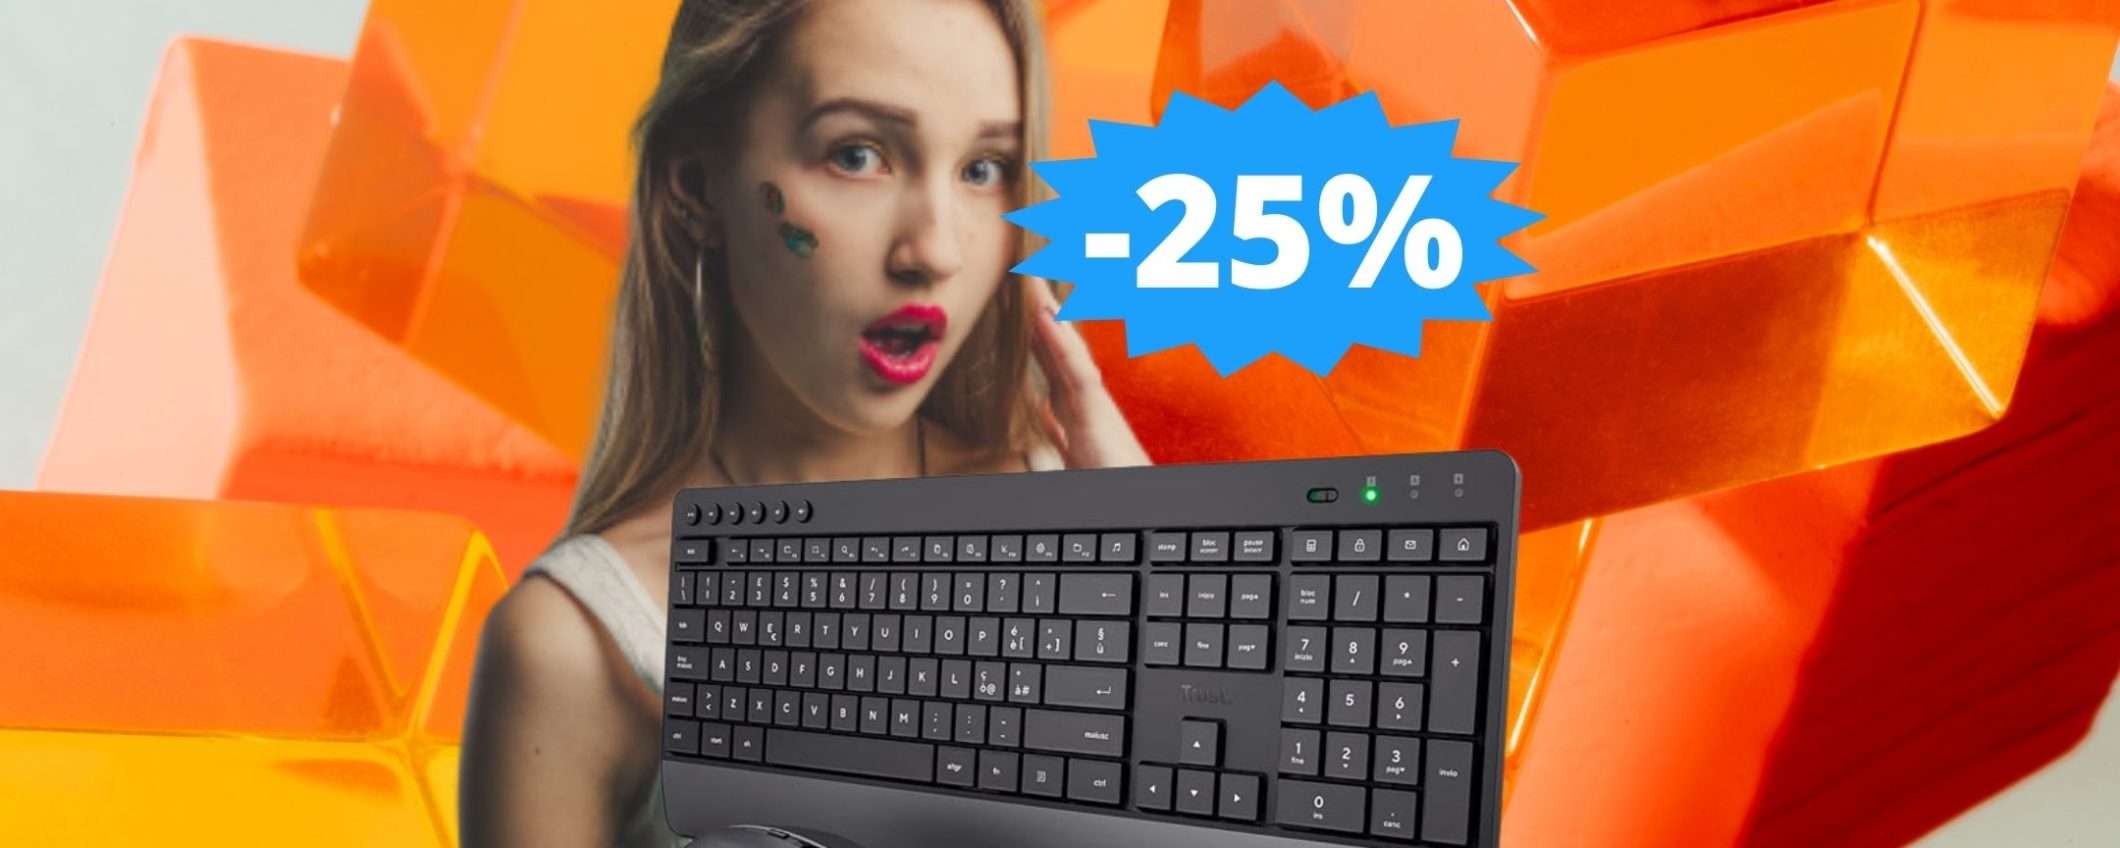 Trust Trezo tastiera e mouse: SUPER sconto del 25% su Amazon